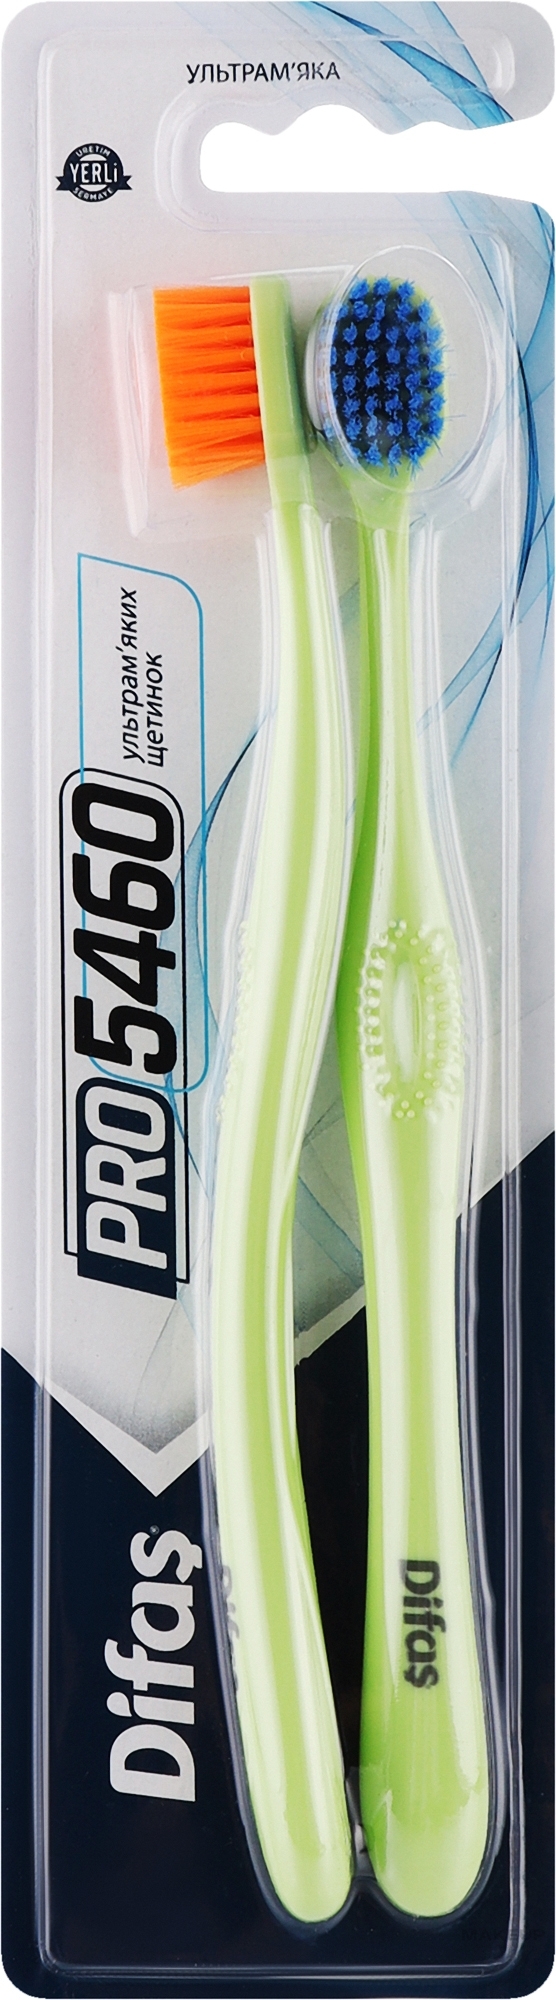 Набор зубных щеток "Ultra Soft", салатовая + салатовая - Difas PRO 5460 — фото 2шт